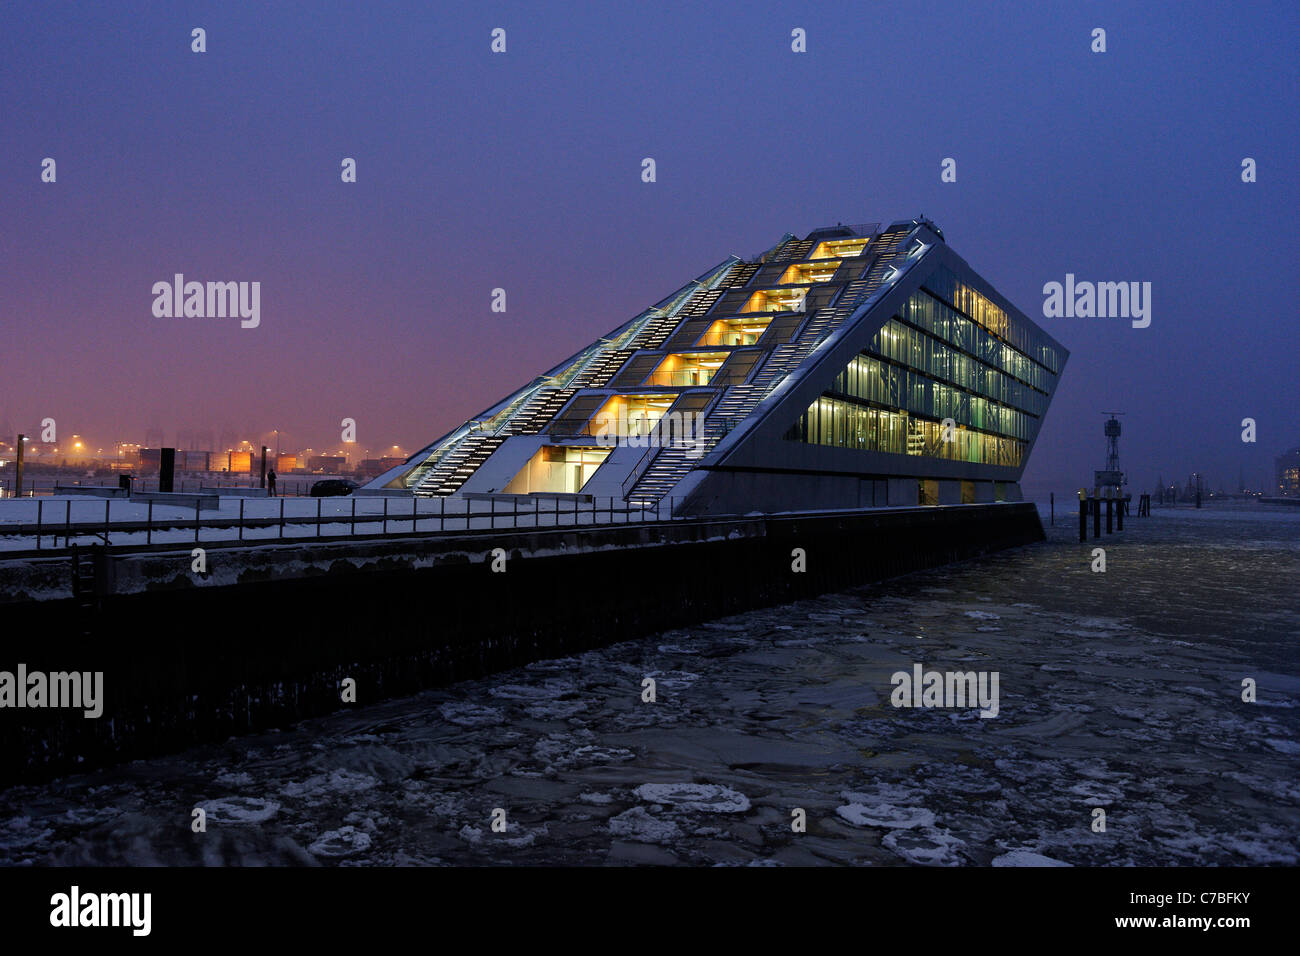 Dockland edificio per uffici con ice floes sul fiume Elba, Neumuehlen distretto, città anseatica di Amburgo, Germania, Europa Foto Stock